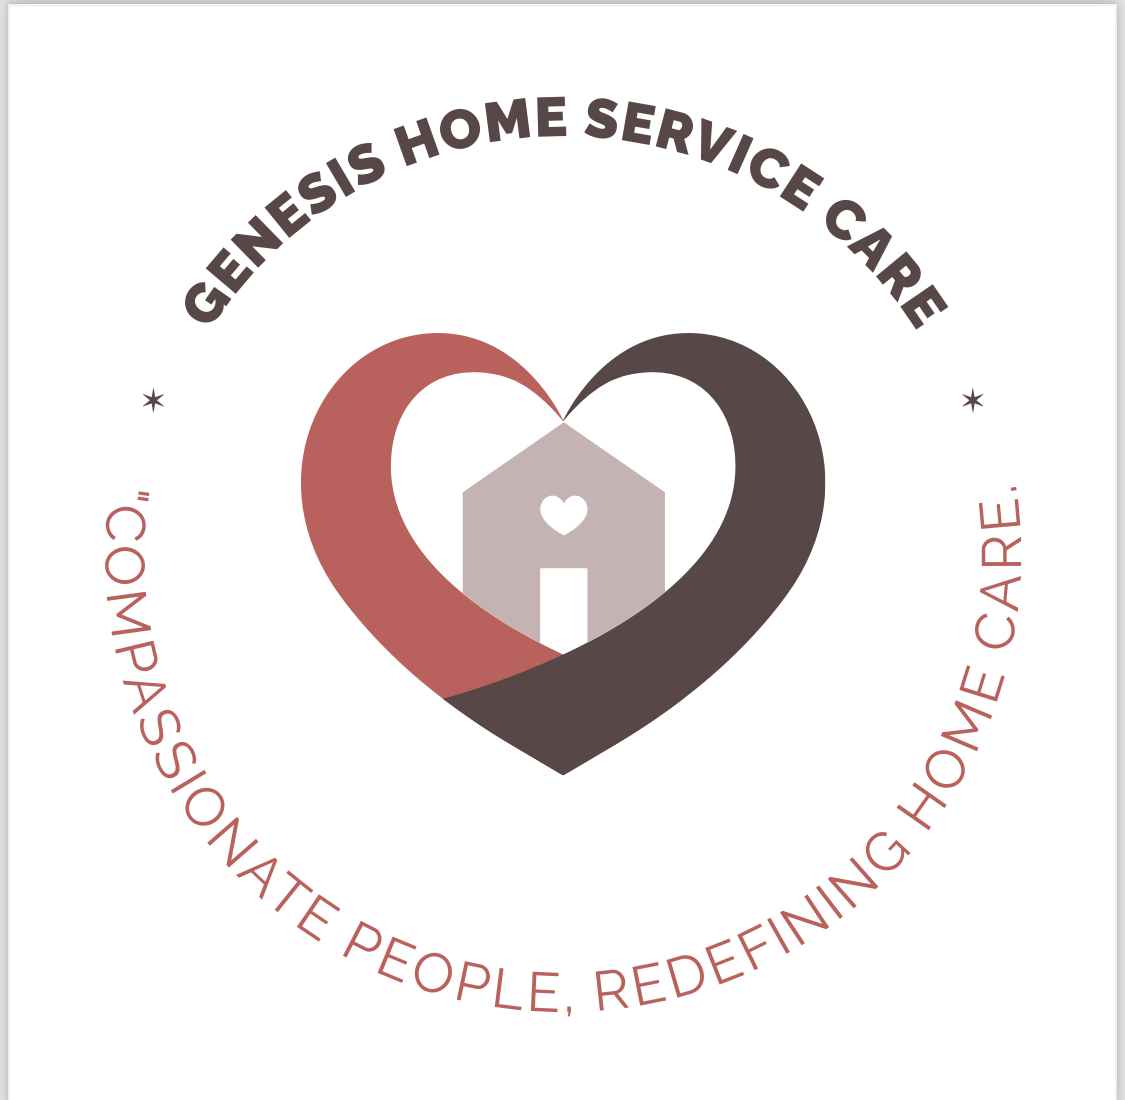 Genesis Home Service Care - Chicago, IL